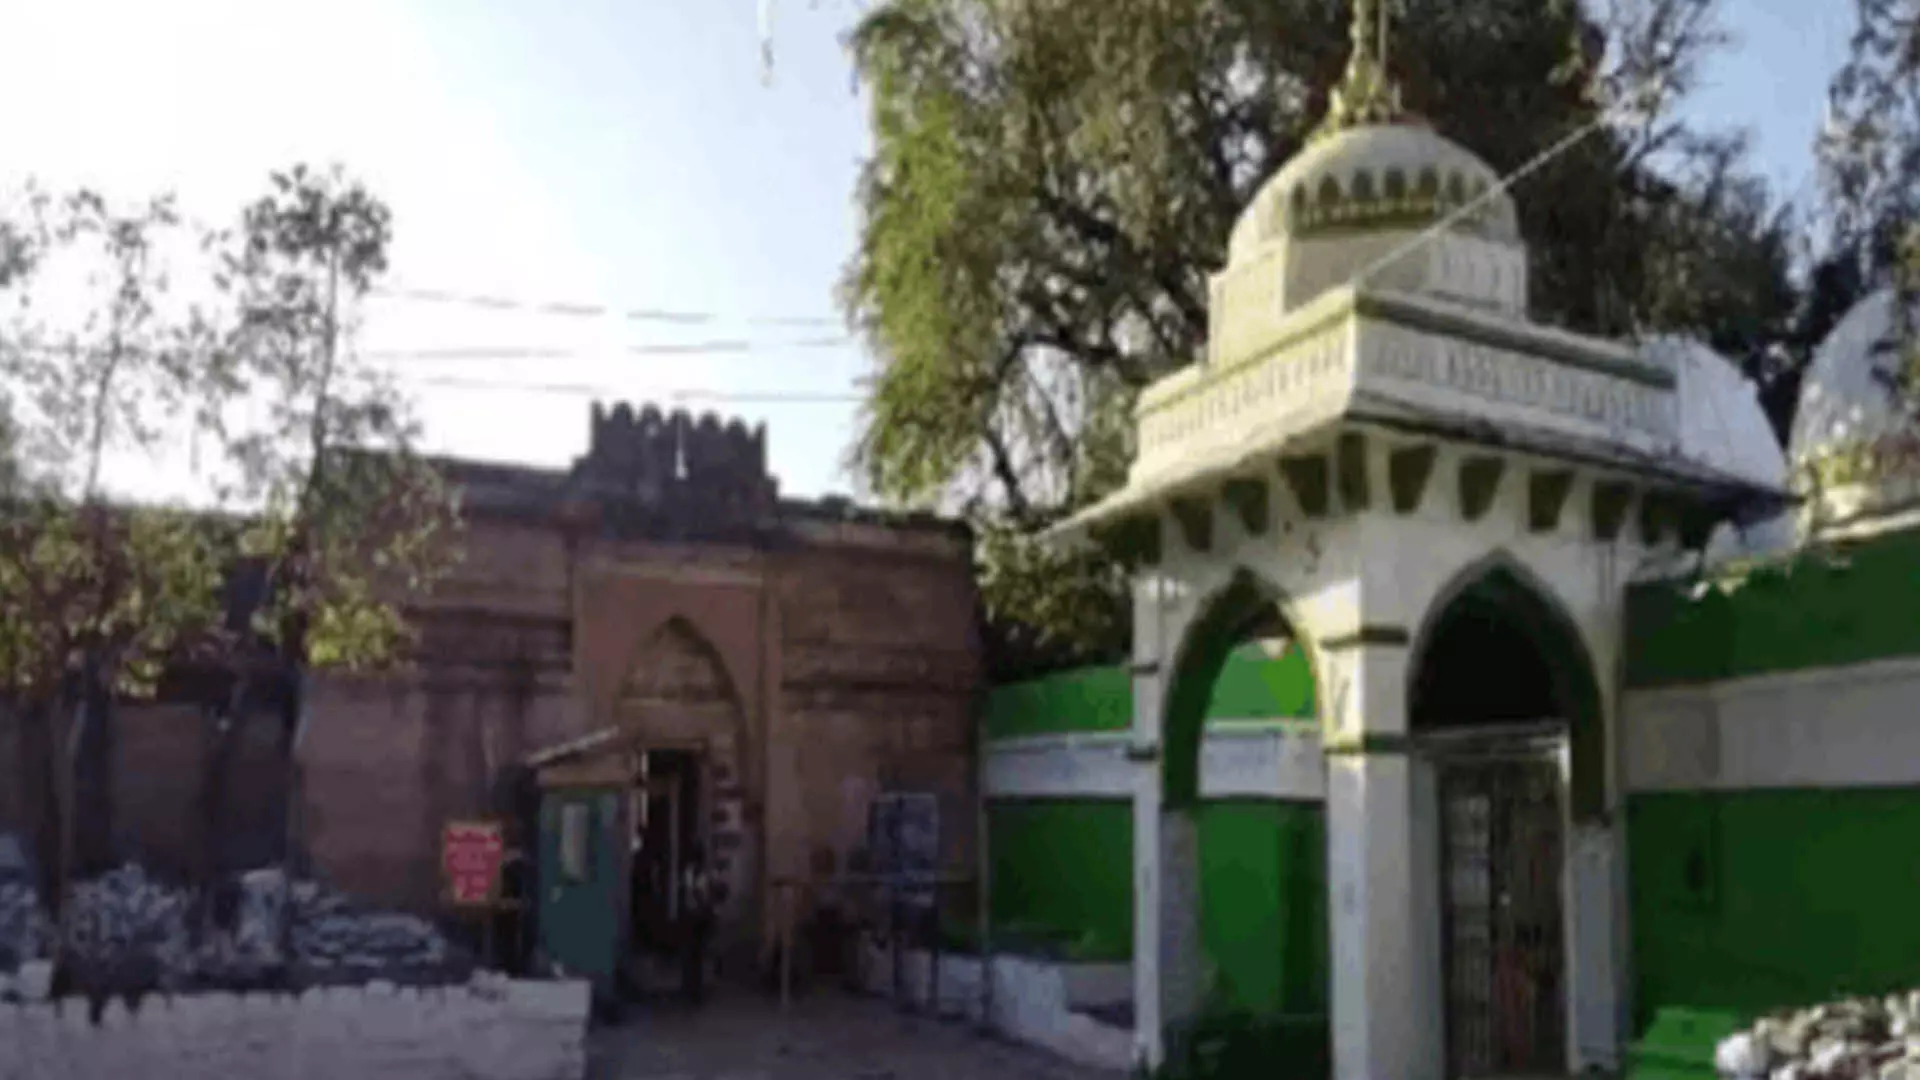 मंदिर , मस्जिद?: उच्च न्यायालय एमपी के विवादित भोजशाला परिसर , एएसआई सर्वेक्षण अनुमति